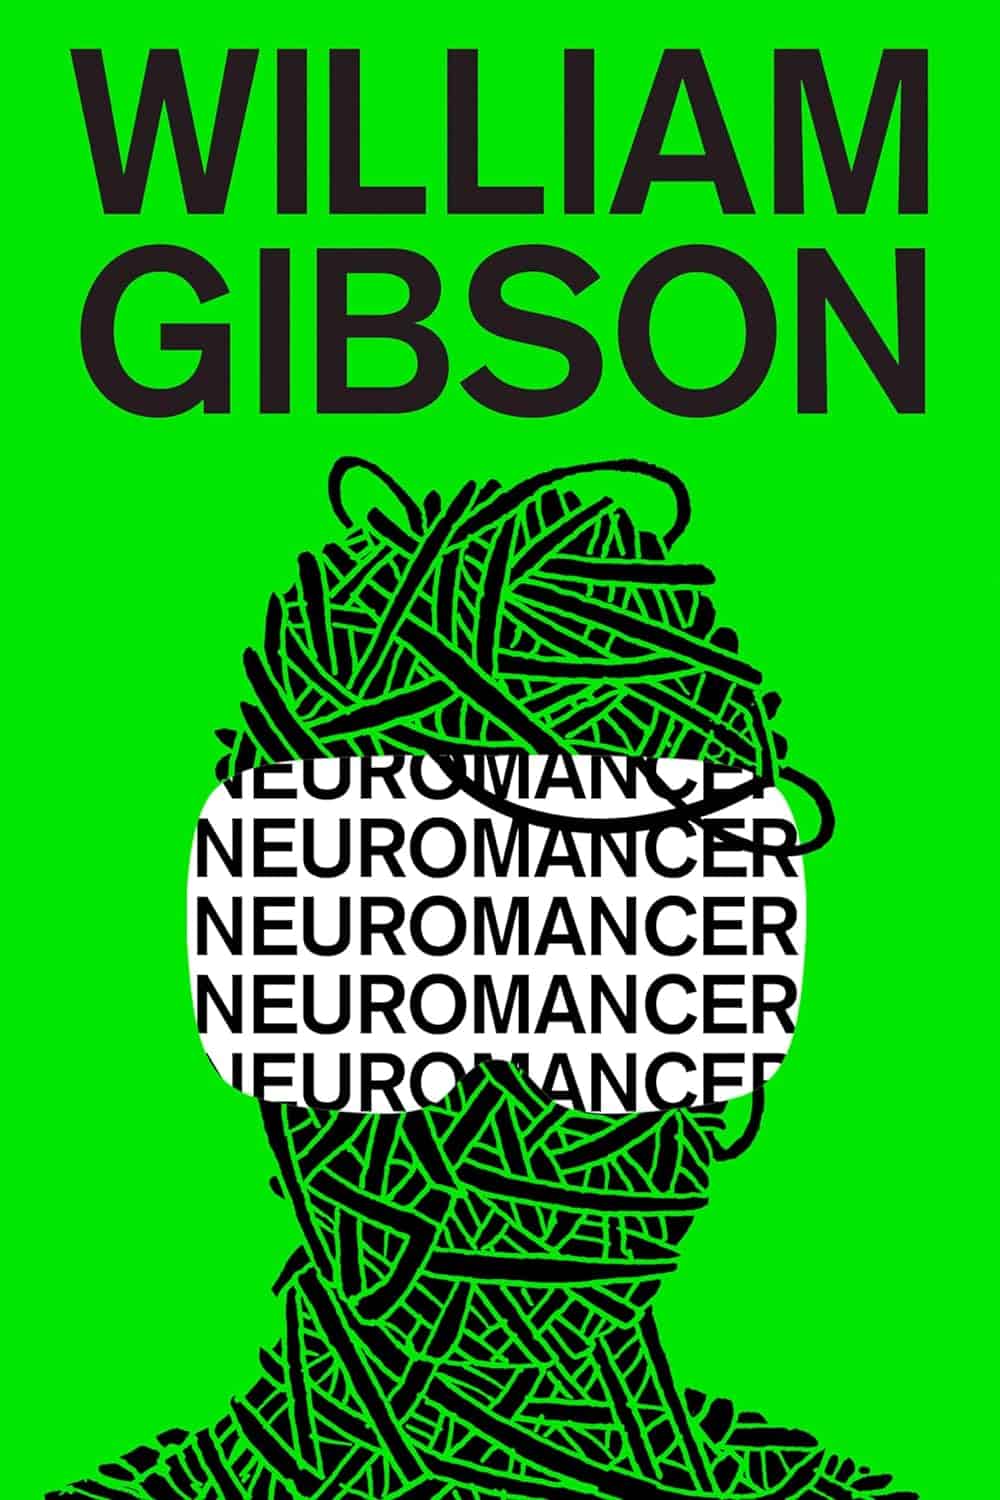 Neuromancer, by William Gibson